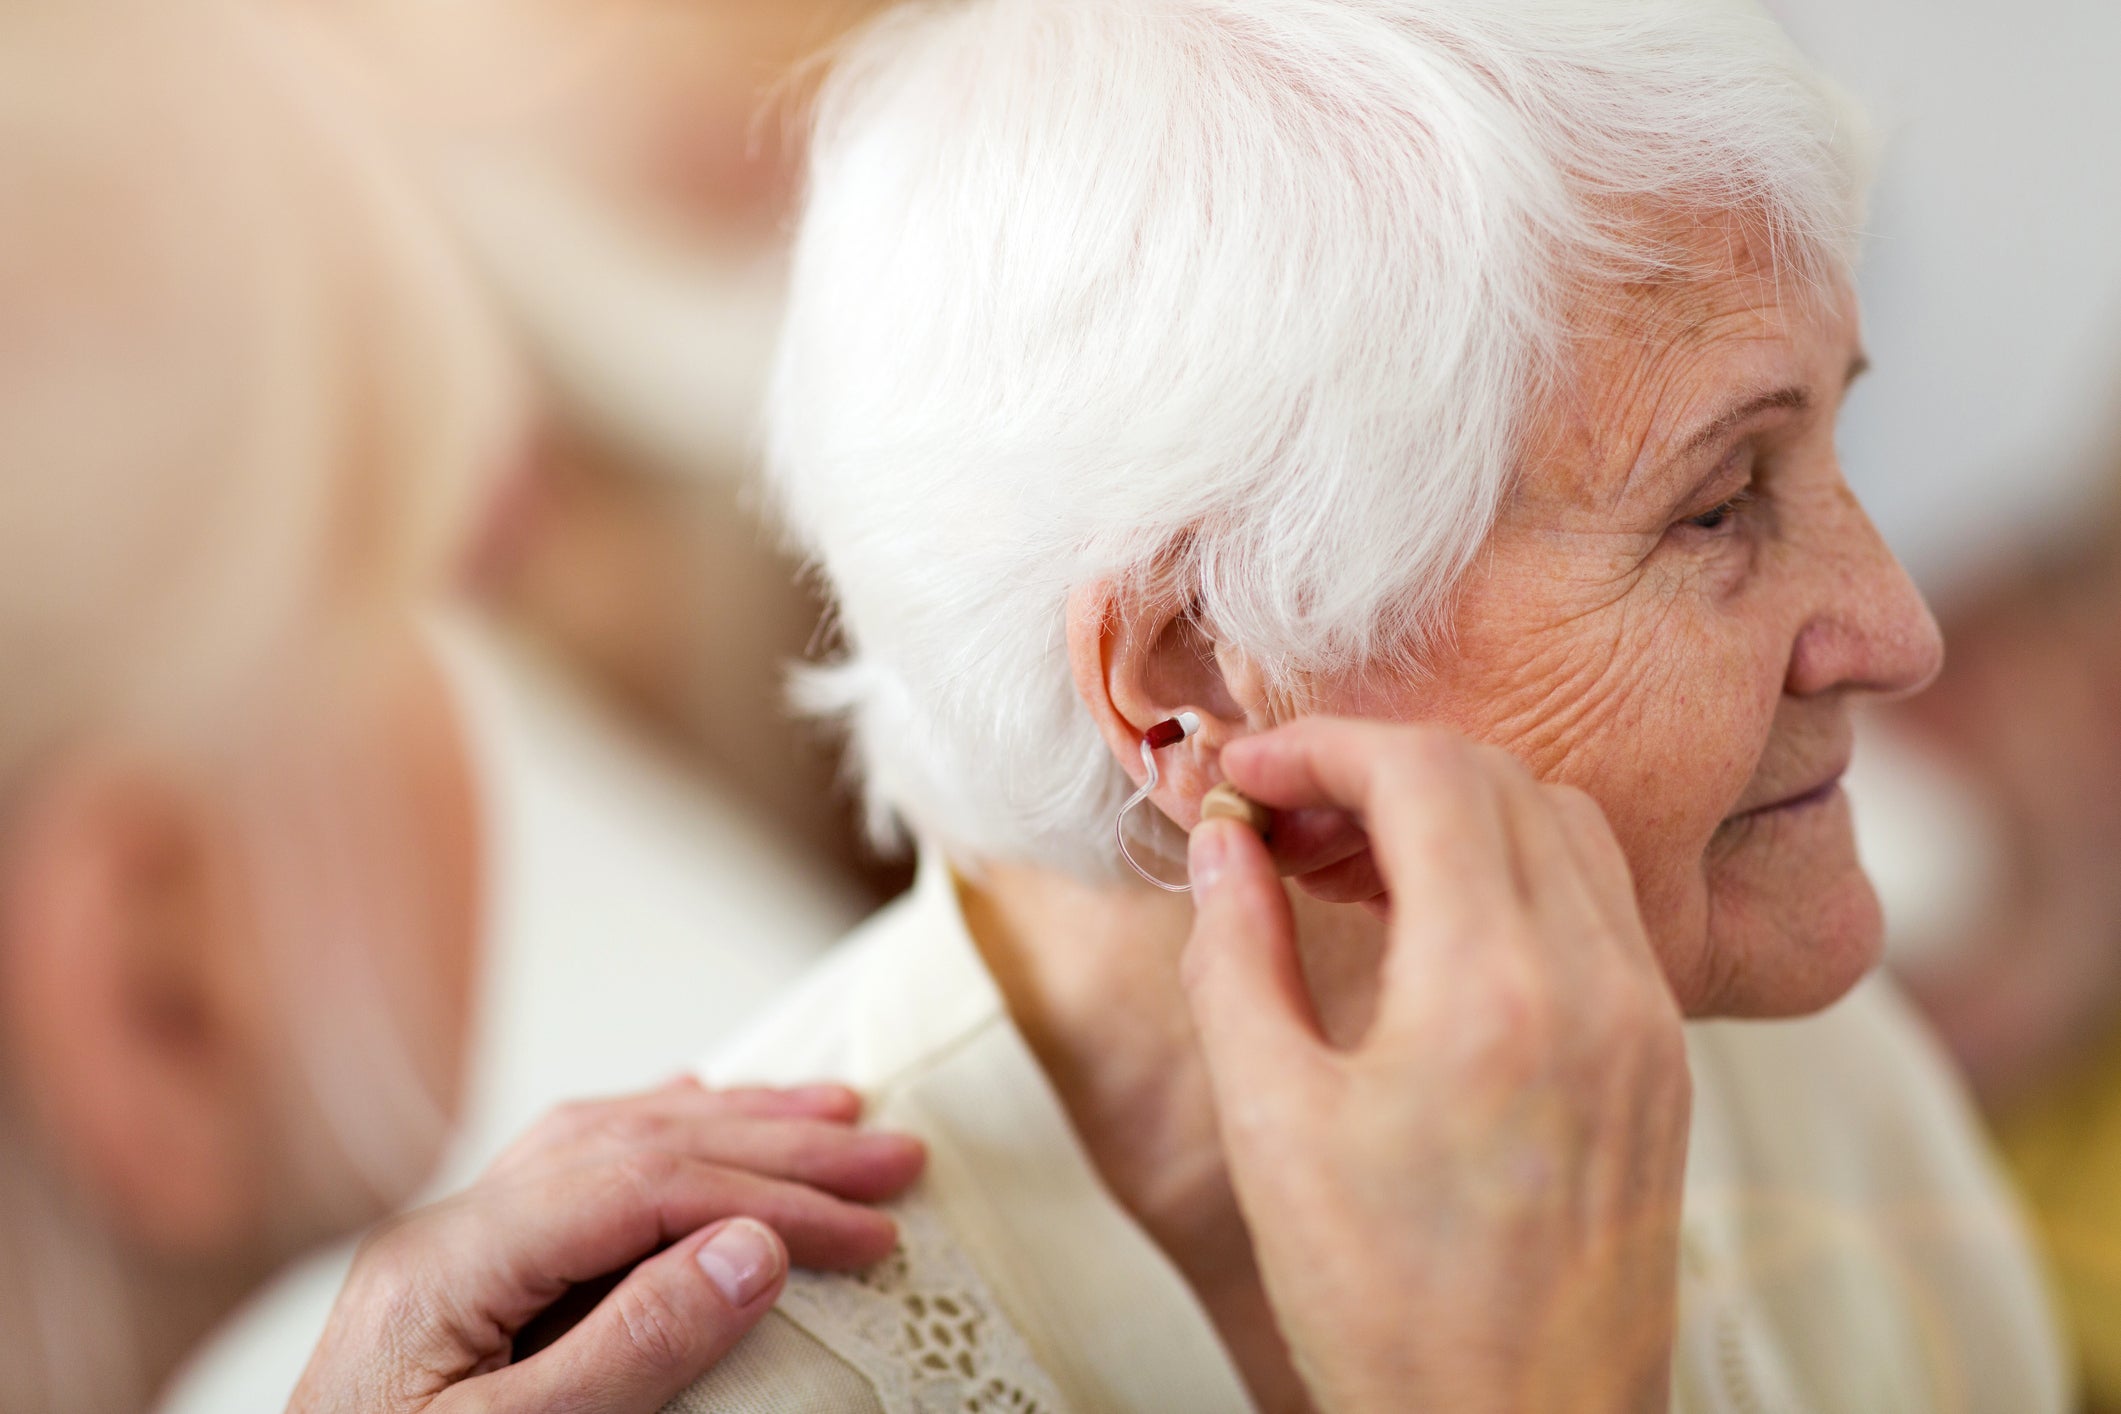 A female doctor applies a hearing aid to a senior woman's ear. 